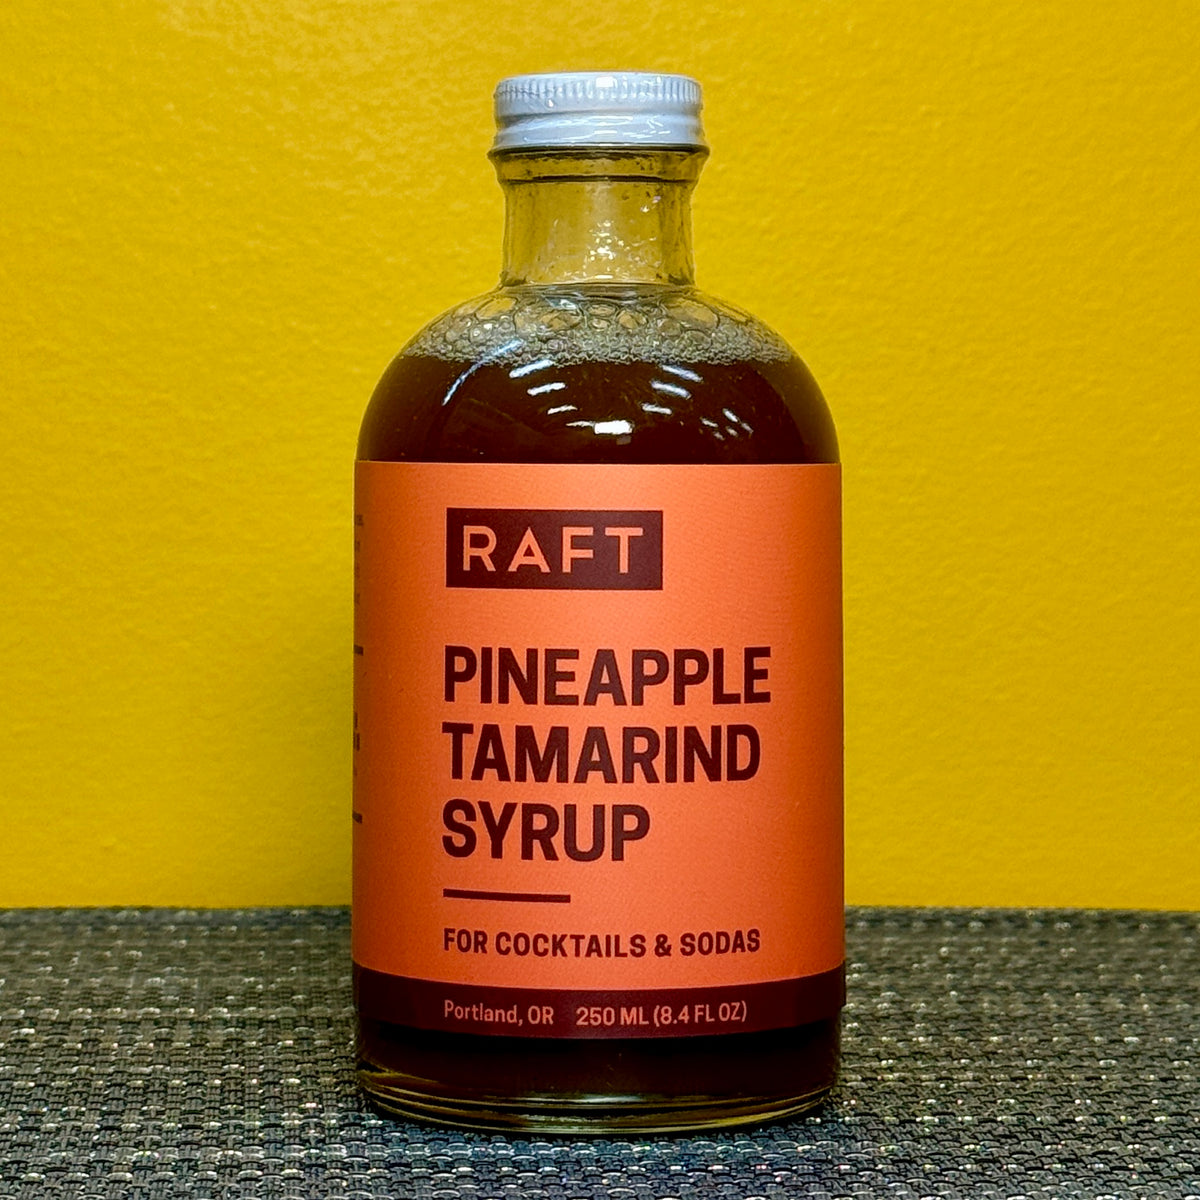 Raft Pineapple Tamarind Syrup